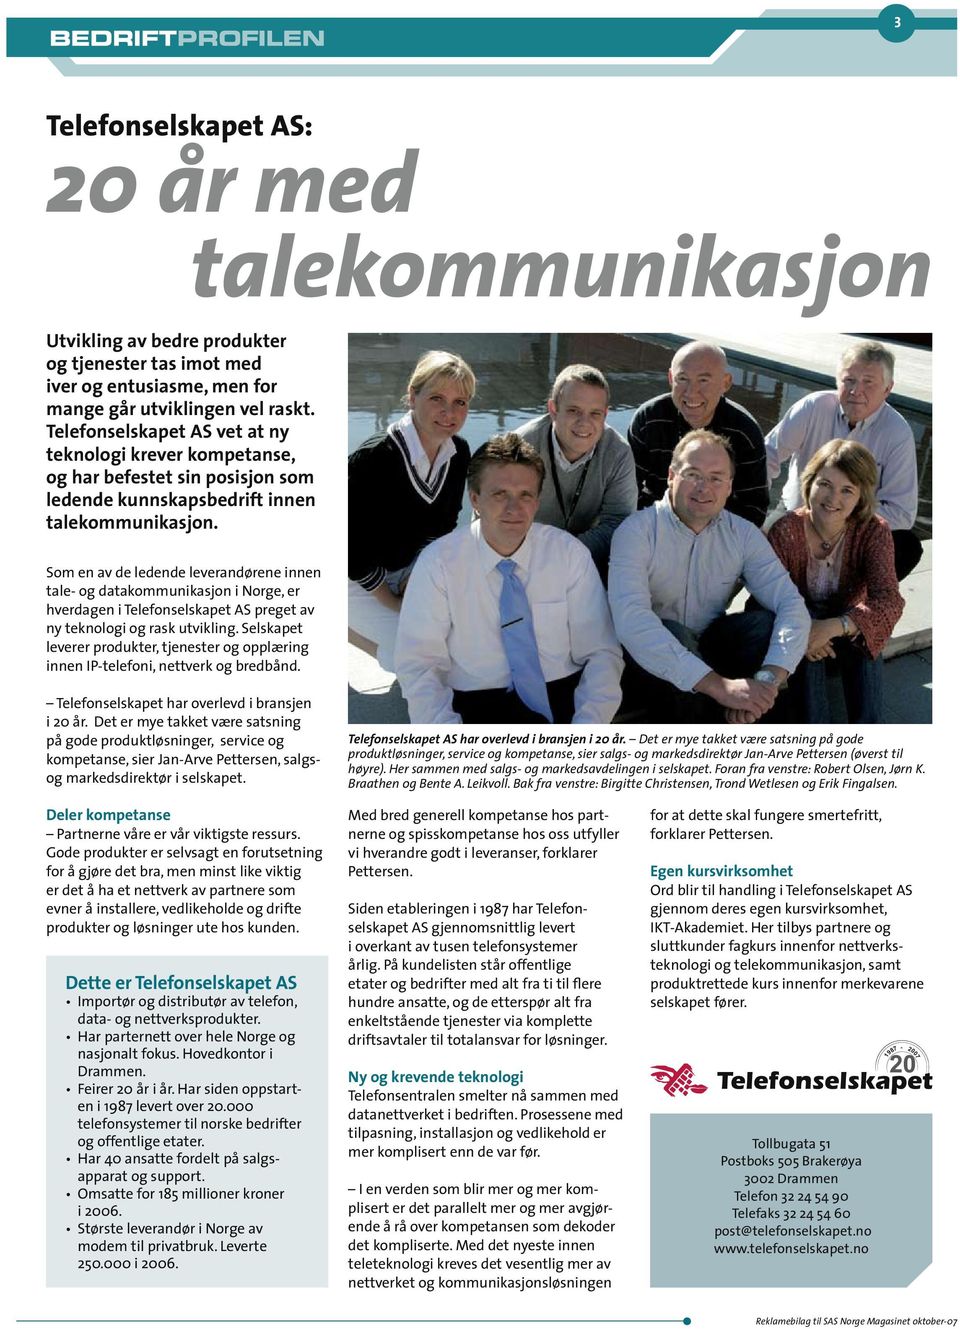 Som en av de ledende leverandørene innen tale- og datakommunikasjon i Norge, er hverdagen i Telefonselskapet AS preget av ny teknologi og rask utvikling.